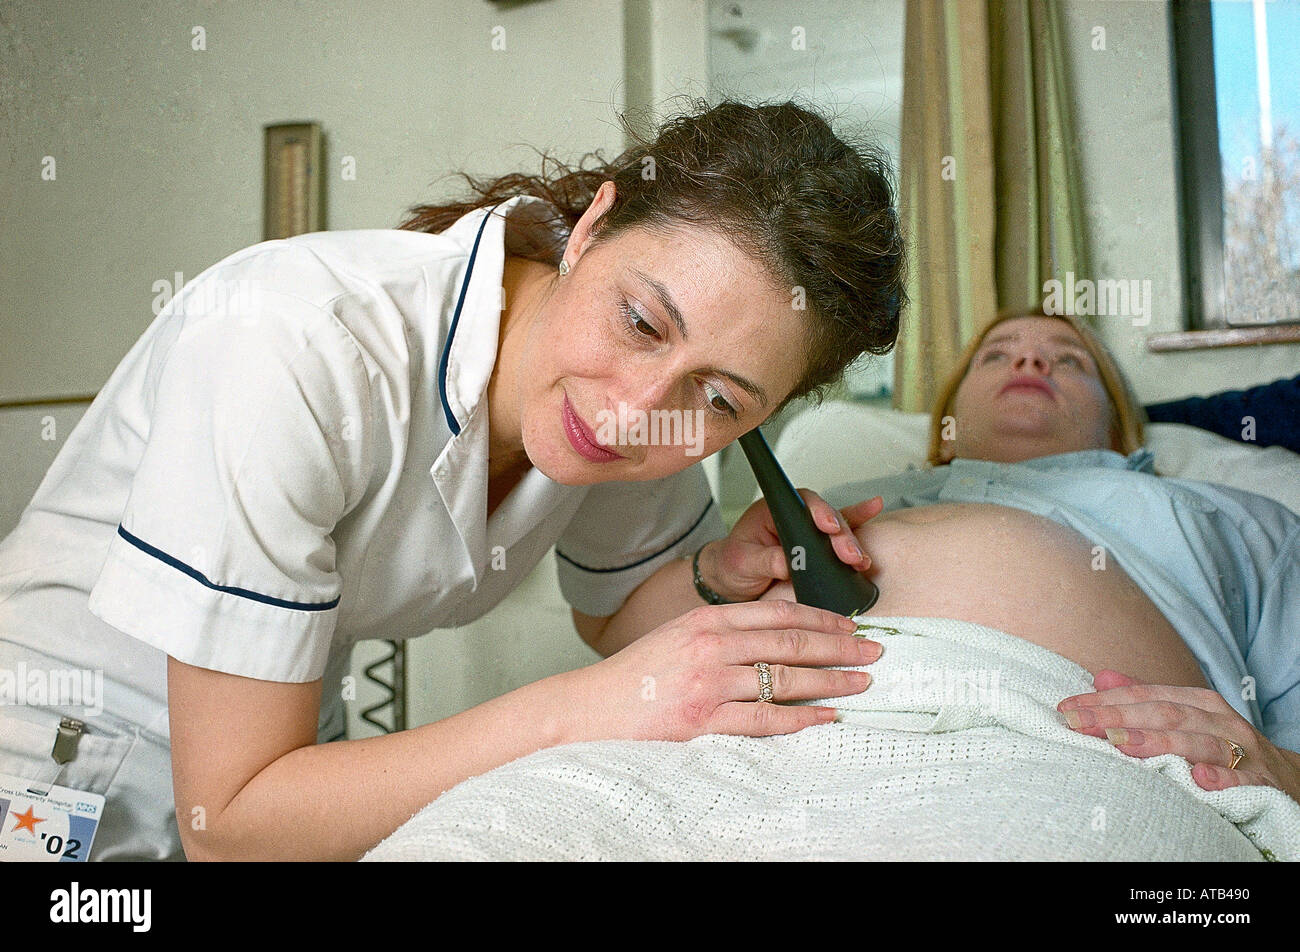 Hebamme fetalen Herzens mit Pinard Stethoskop hören Stockfotografie - Alamy